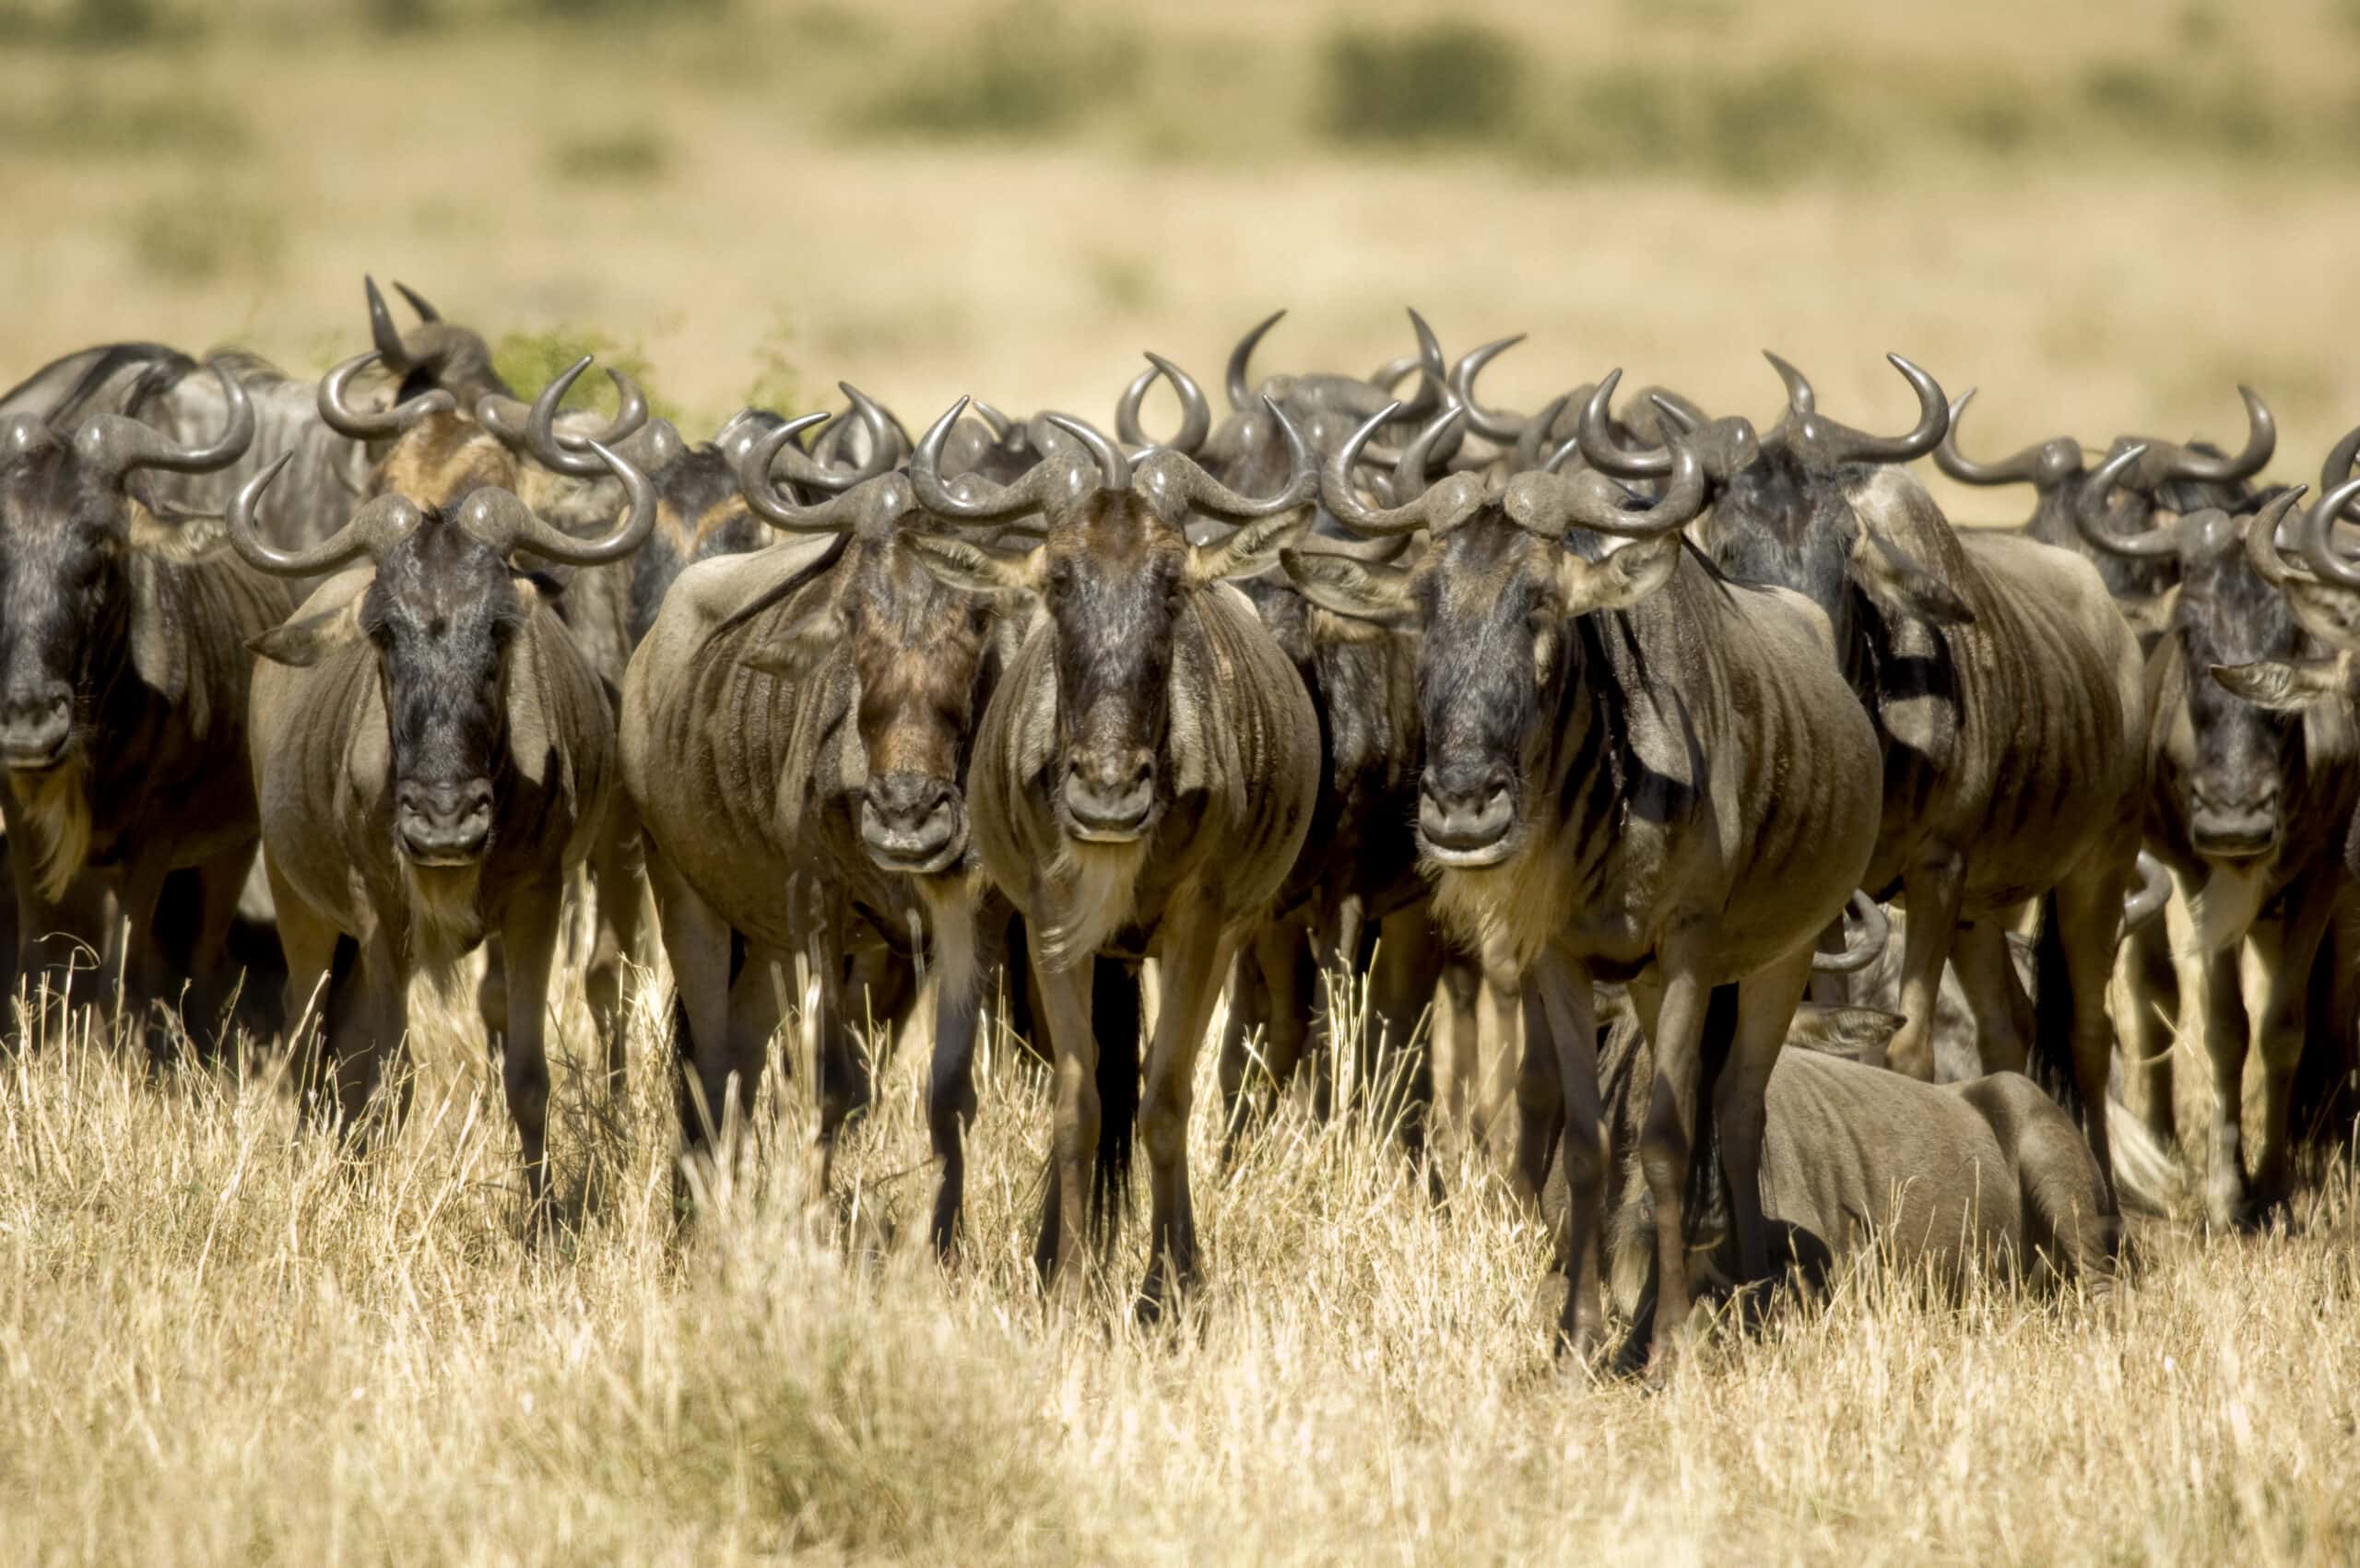 wildebeest masai mara kenya 2021 08 26 18 00 22 utc scaled